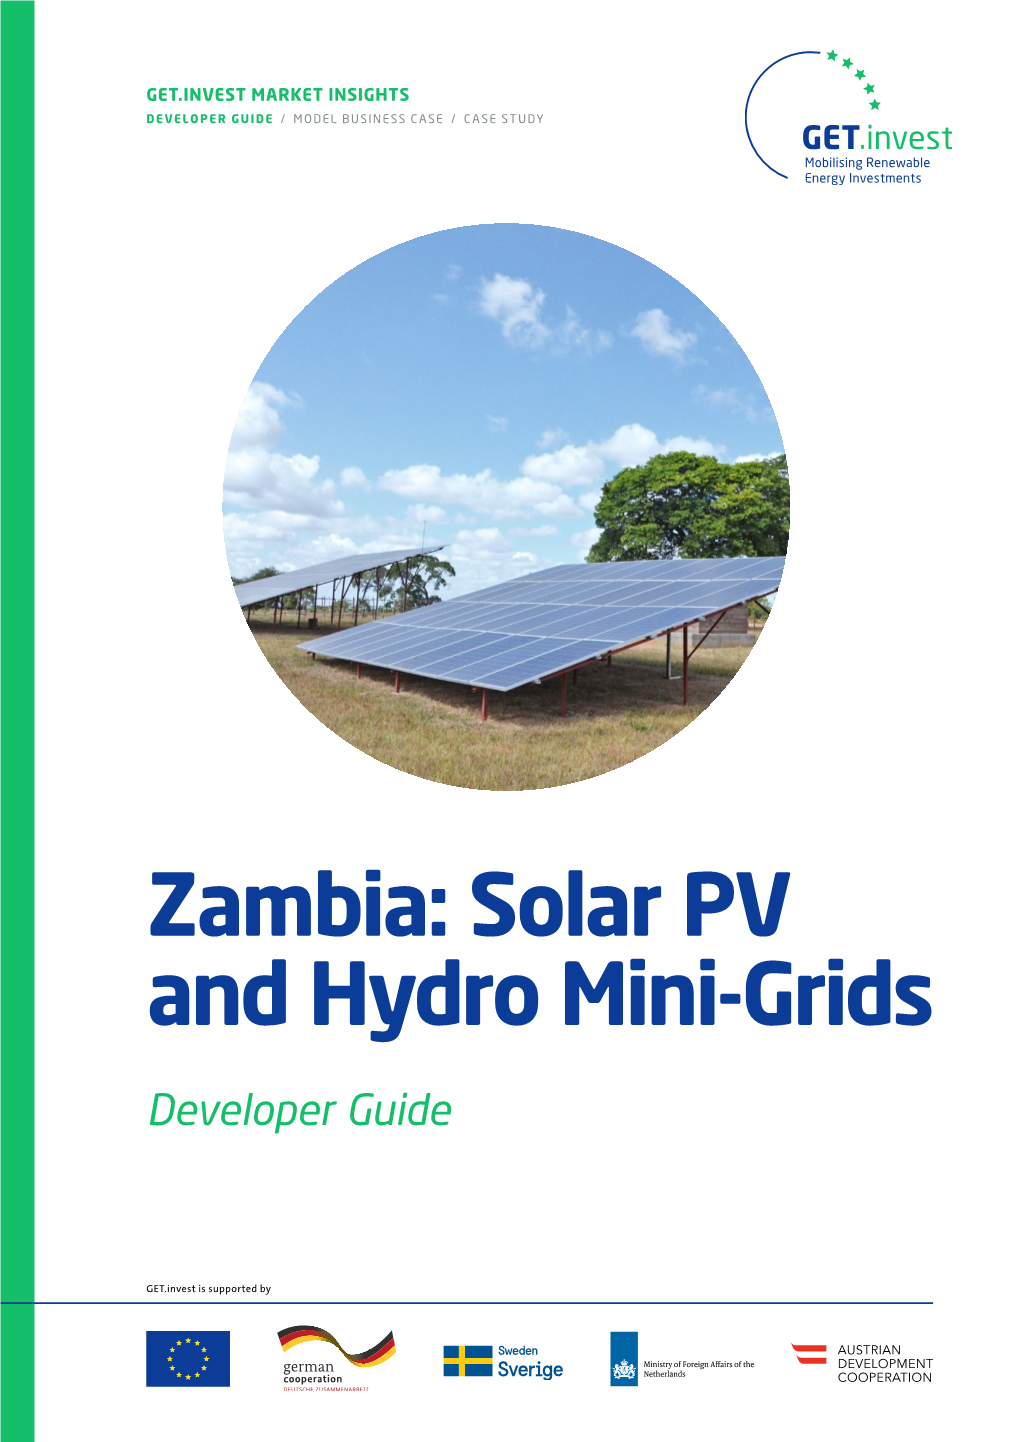 Zambia: Solar PV and Hydro Mini-Grids — Developer Guide